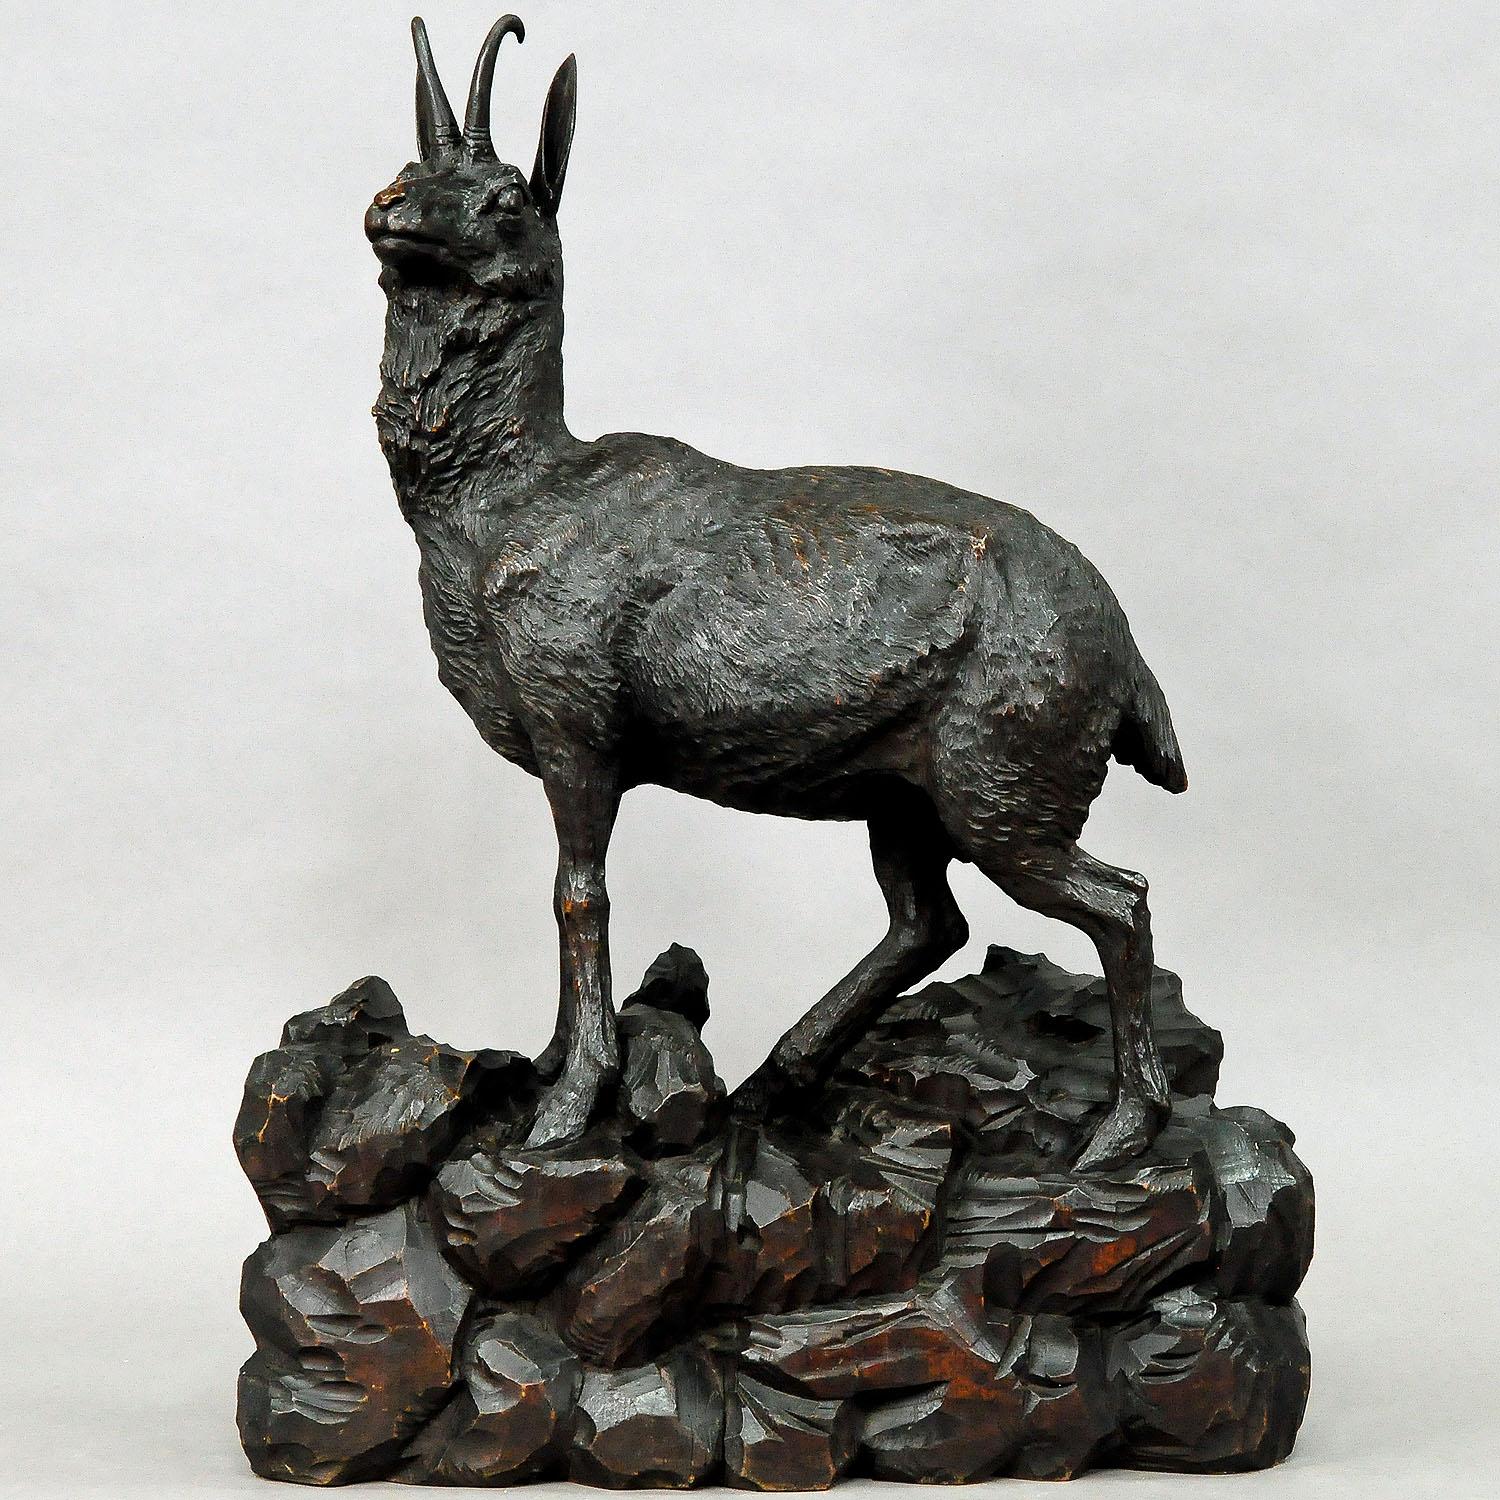 Sculpture naturaliste expressive d'un grand chamois debout sur une base rocheuse. Il est sculpté à la main et teinté en bois de tilleul. Exécuté en Autriche vers 1900.

Mesures : Longueur 17.72